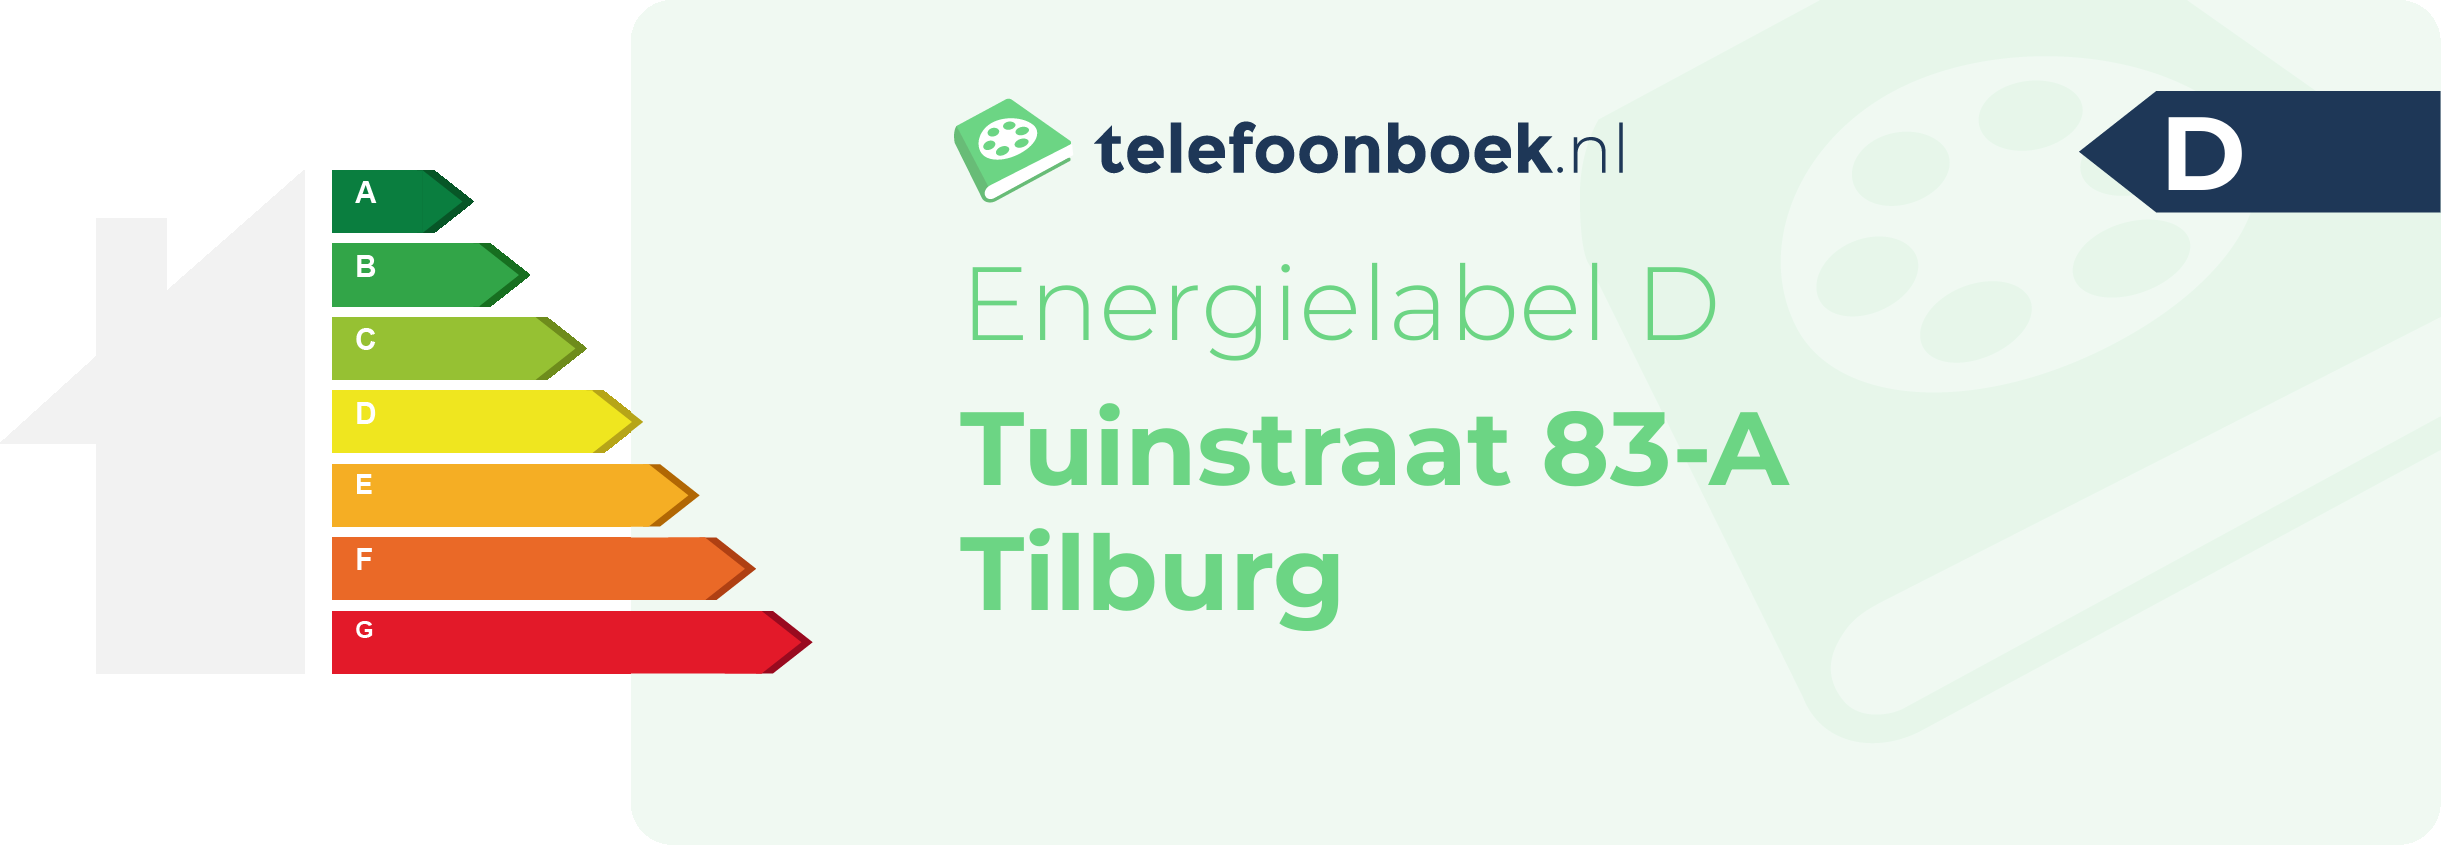 Energielabel Tuinstraat 83-A Tilburg